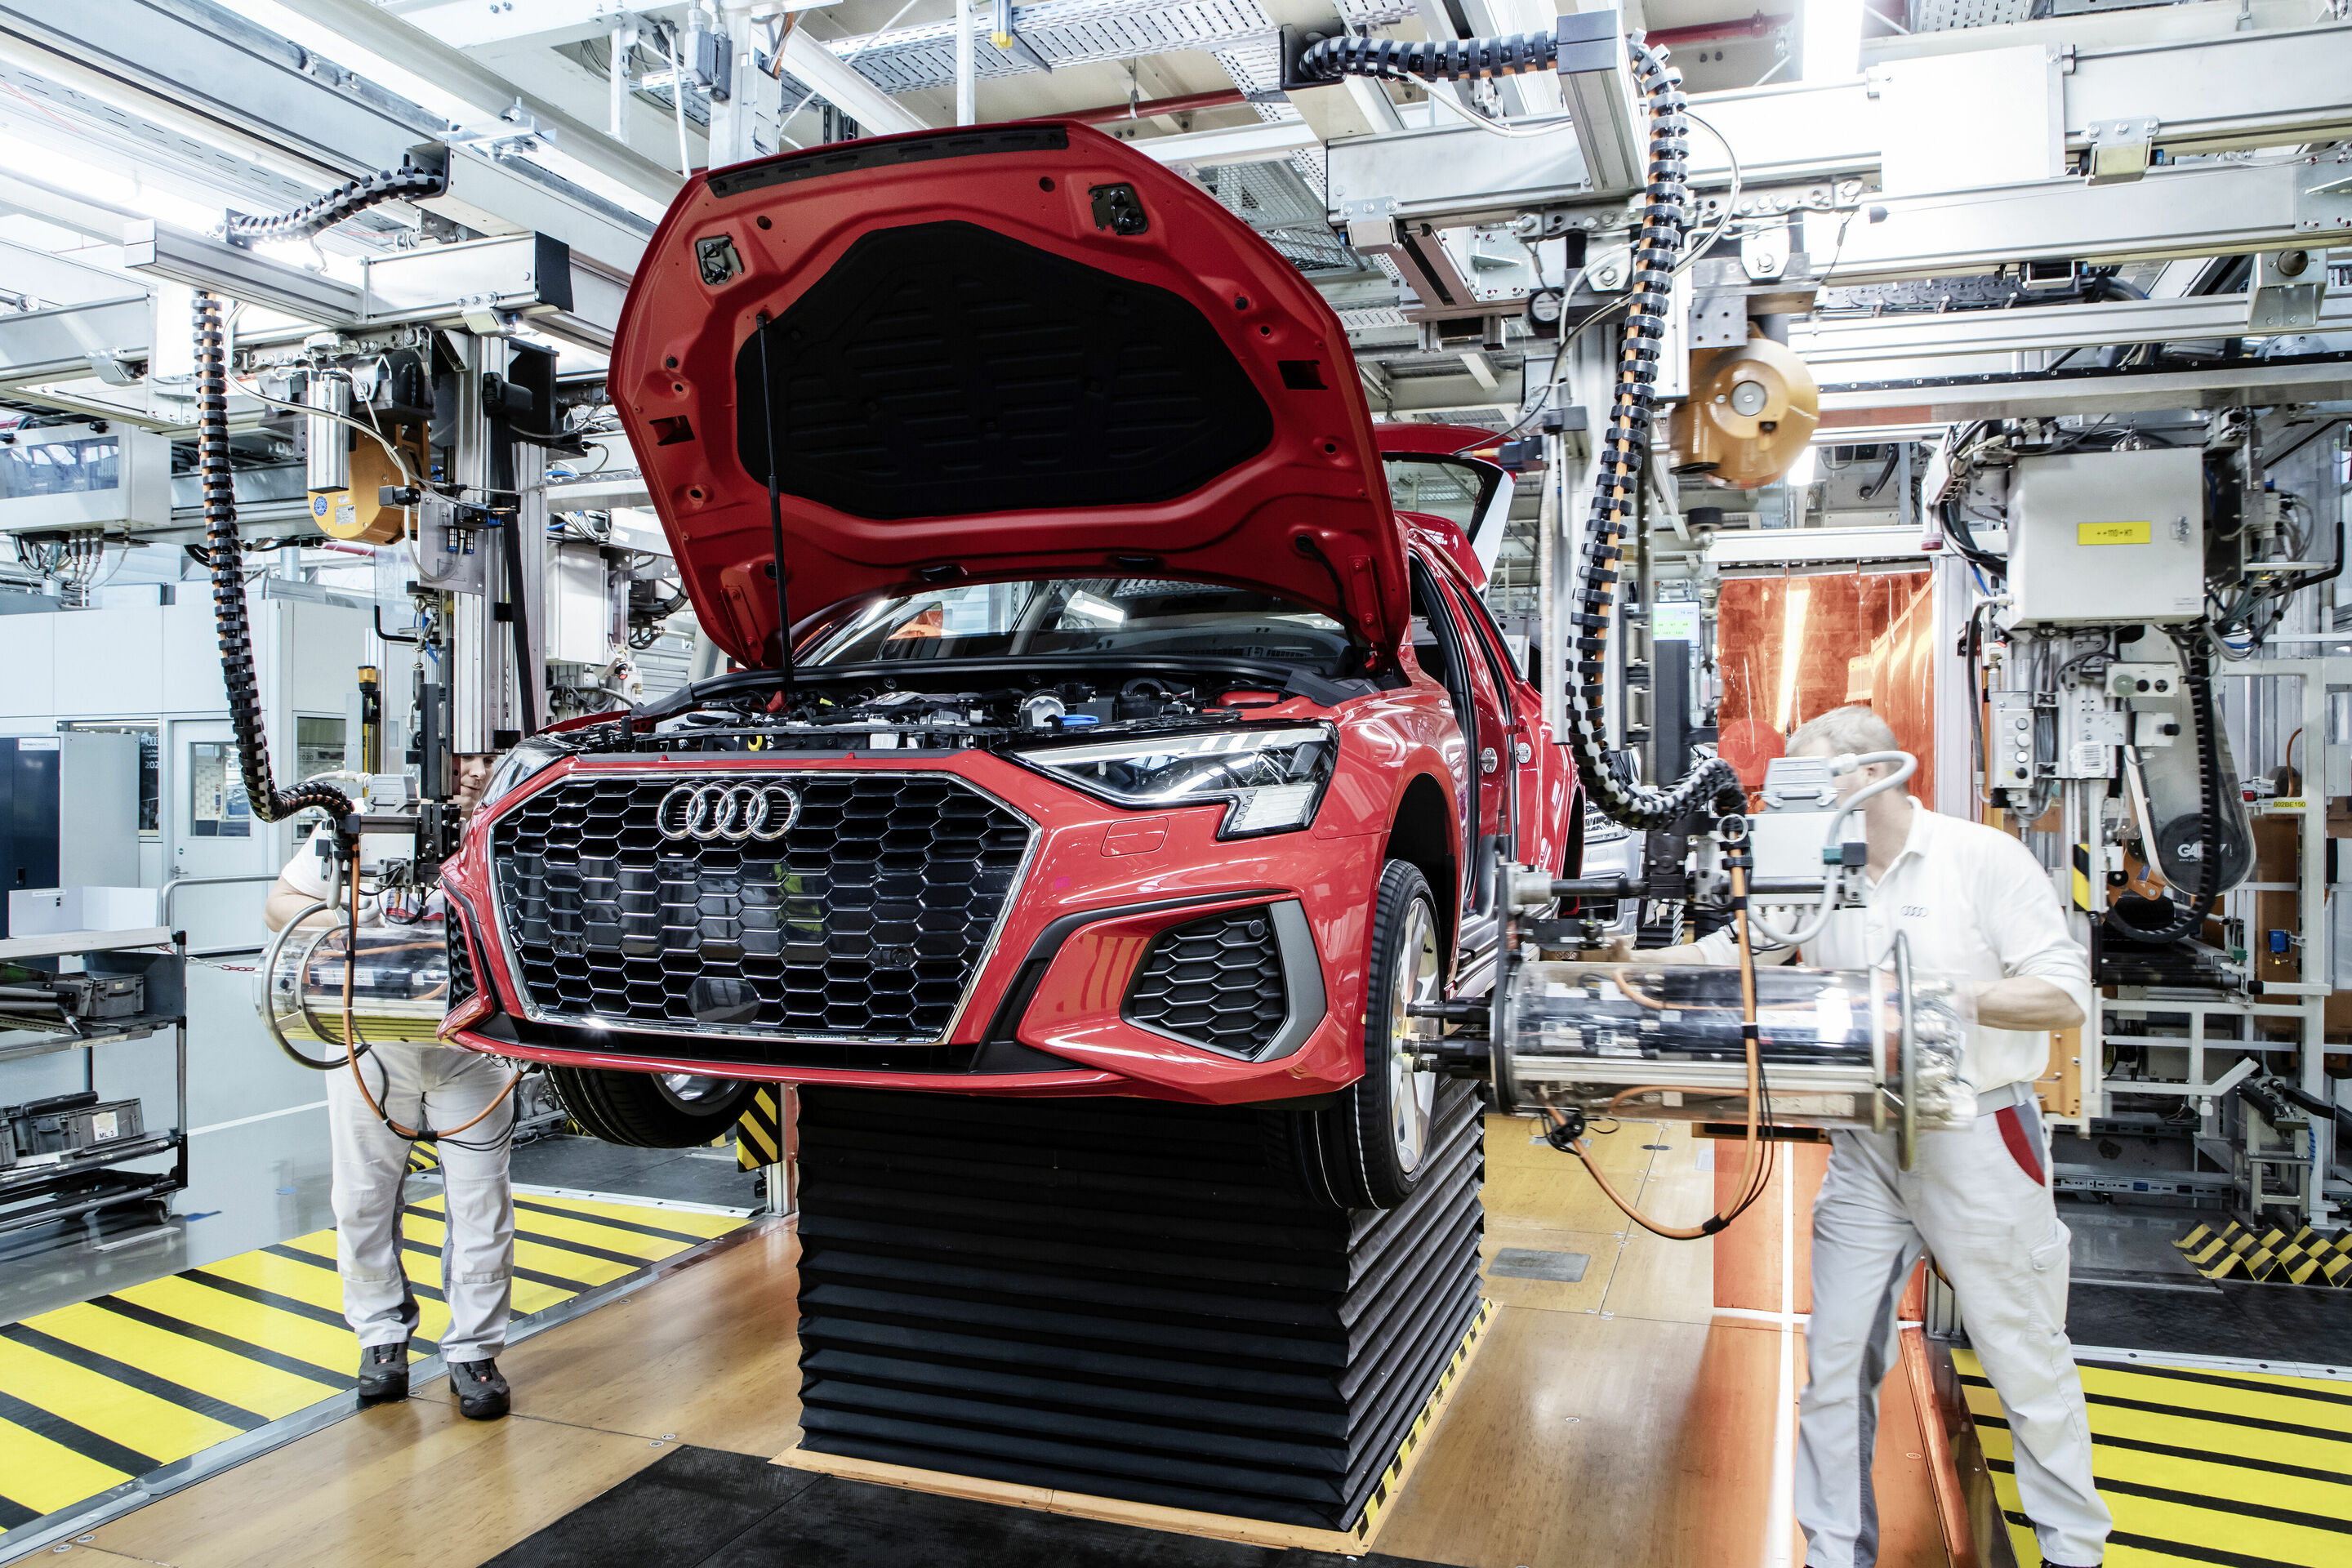 Ein Claim mit Geschichte: Audi feiert 50 Jahre „Vorsprung durch Technik“